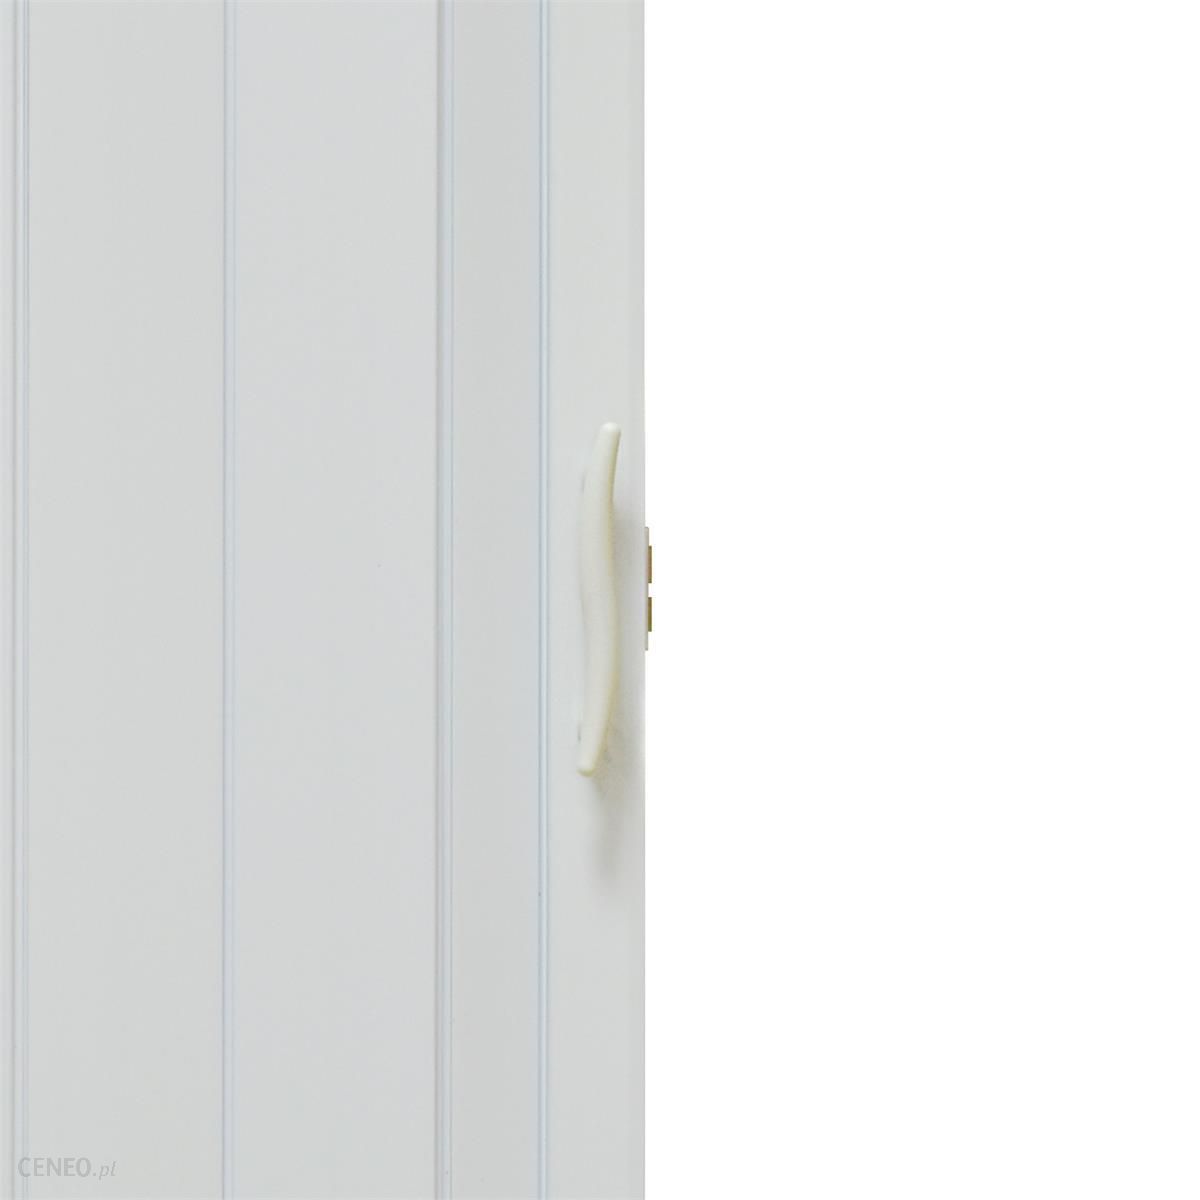 Gockowiak Drzwi Harmonijkowe 001P 014 Biały Mat 80Cm